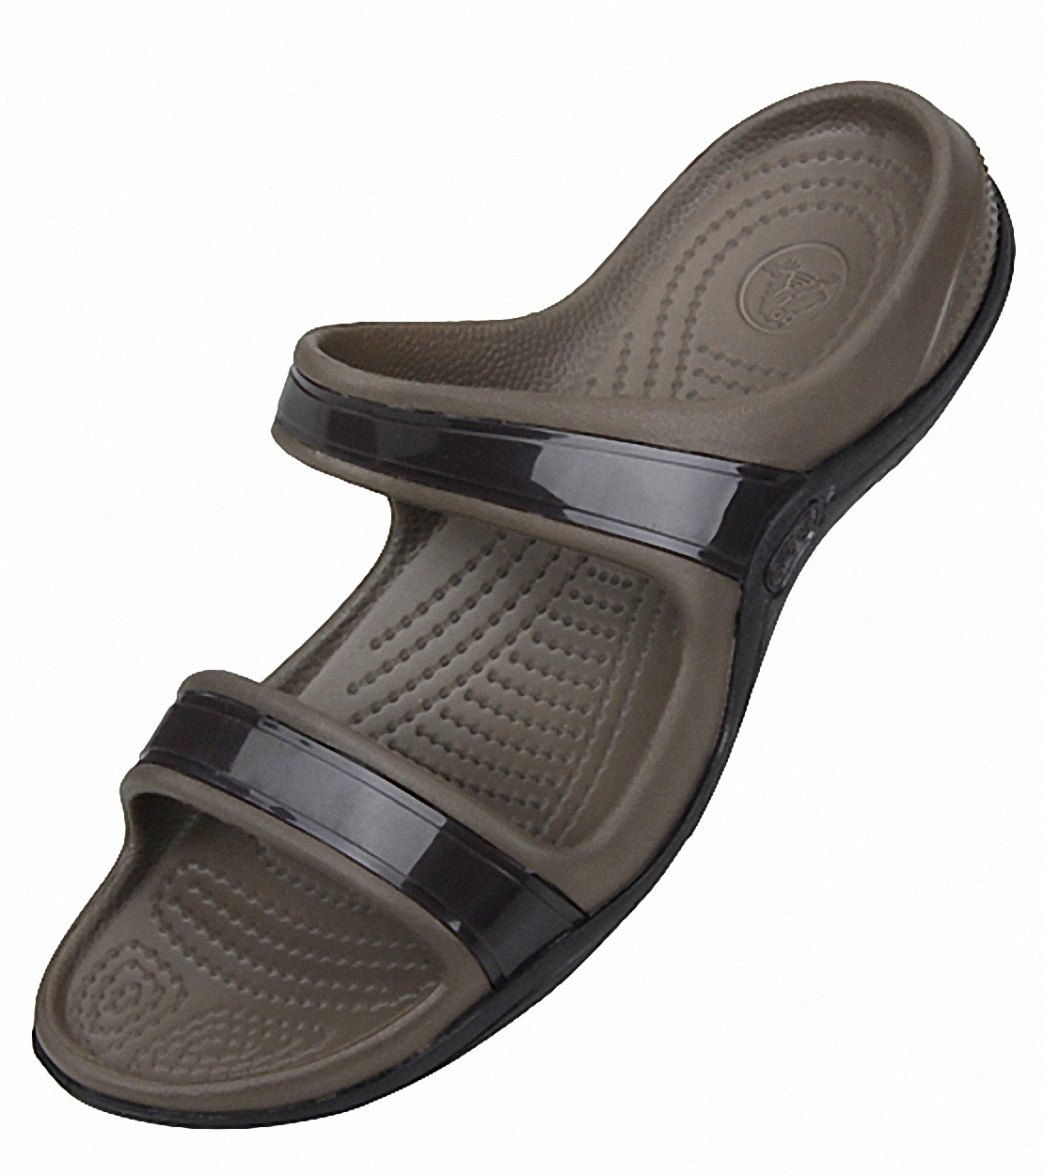  Crocs  Women s  Patra II Sandals  at SwimOutlet com